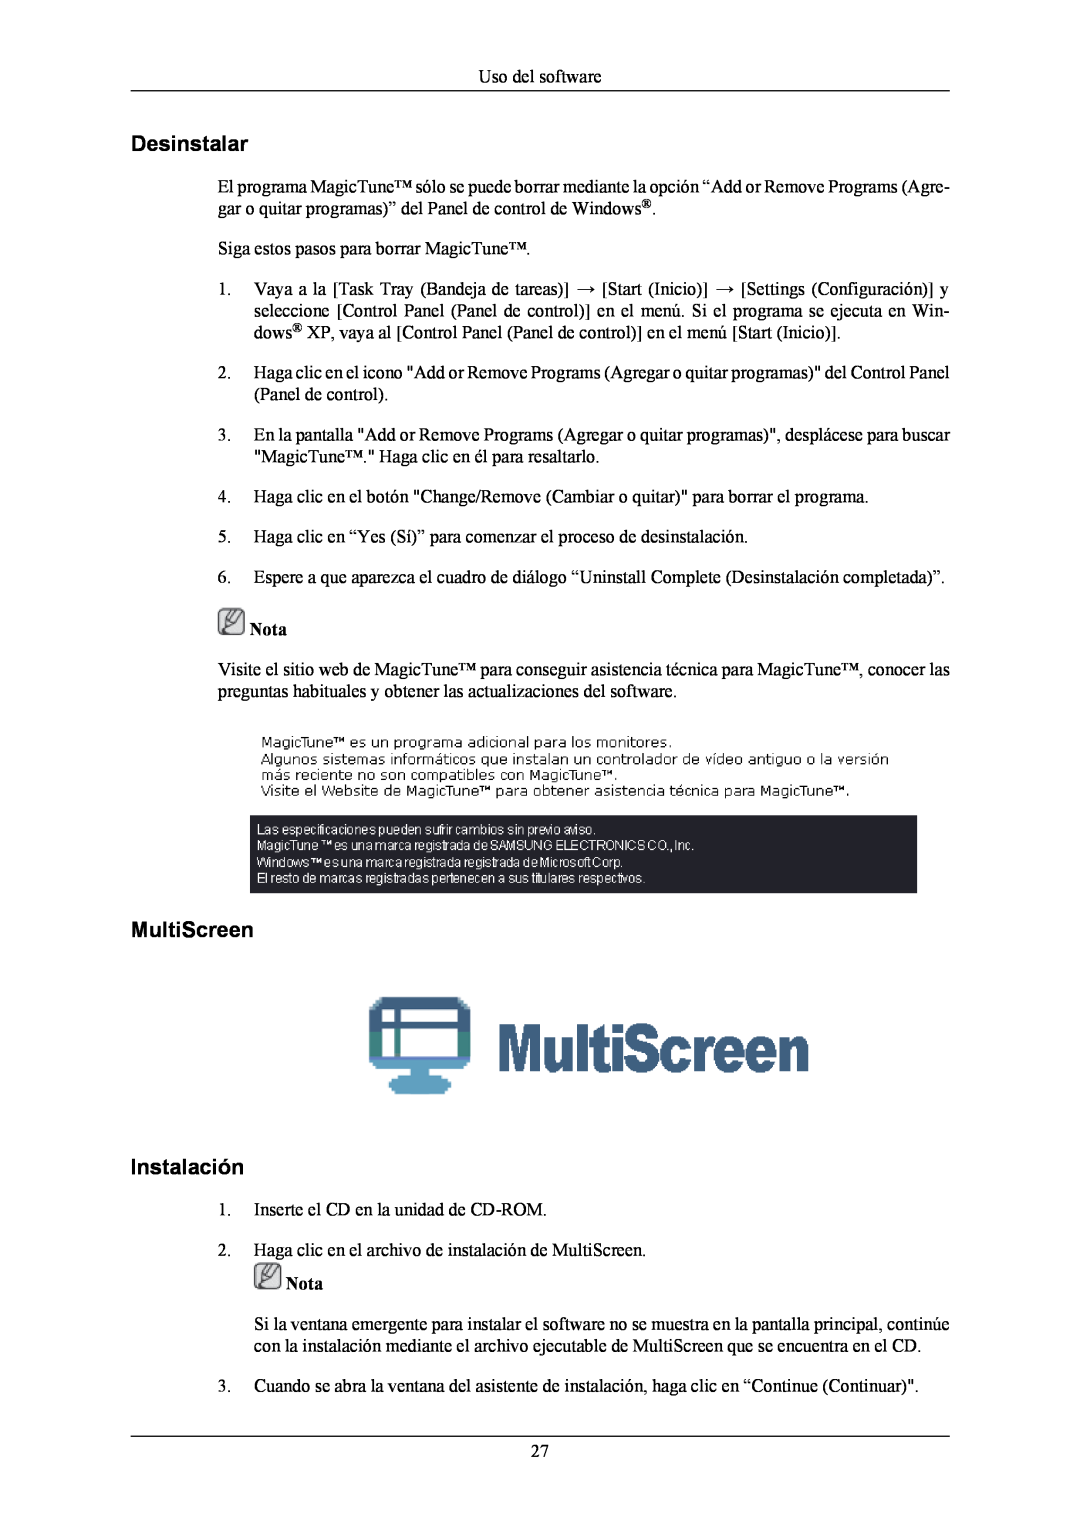 Samsung T190G, T220G, T200G manual Desinstalar, MultiScreen Instalación, Nota 